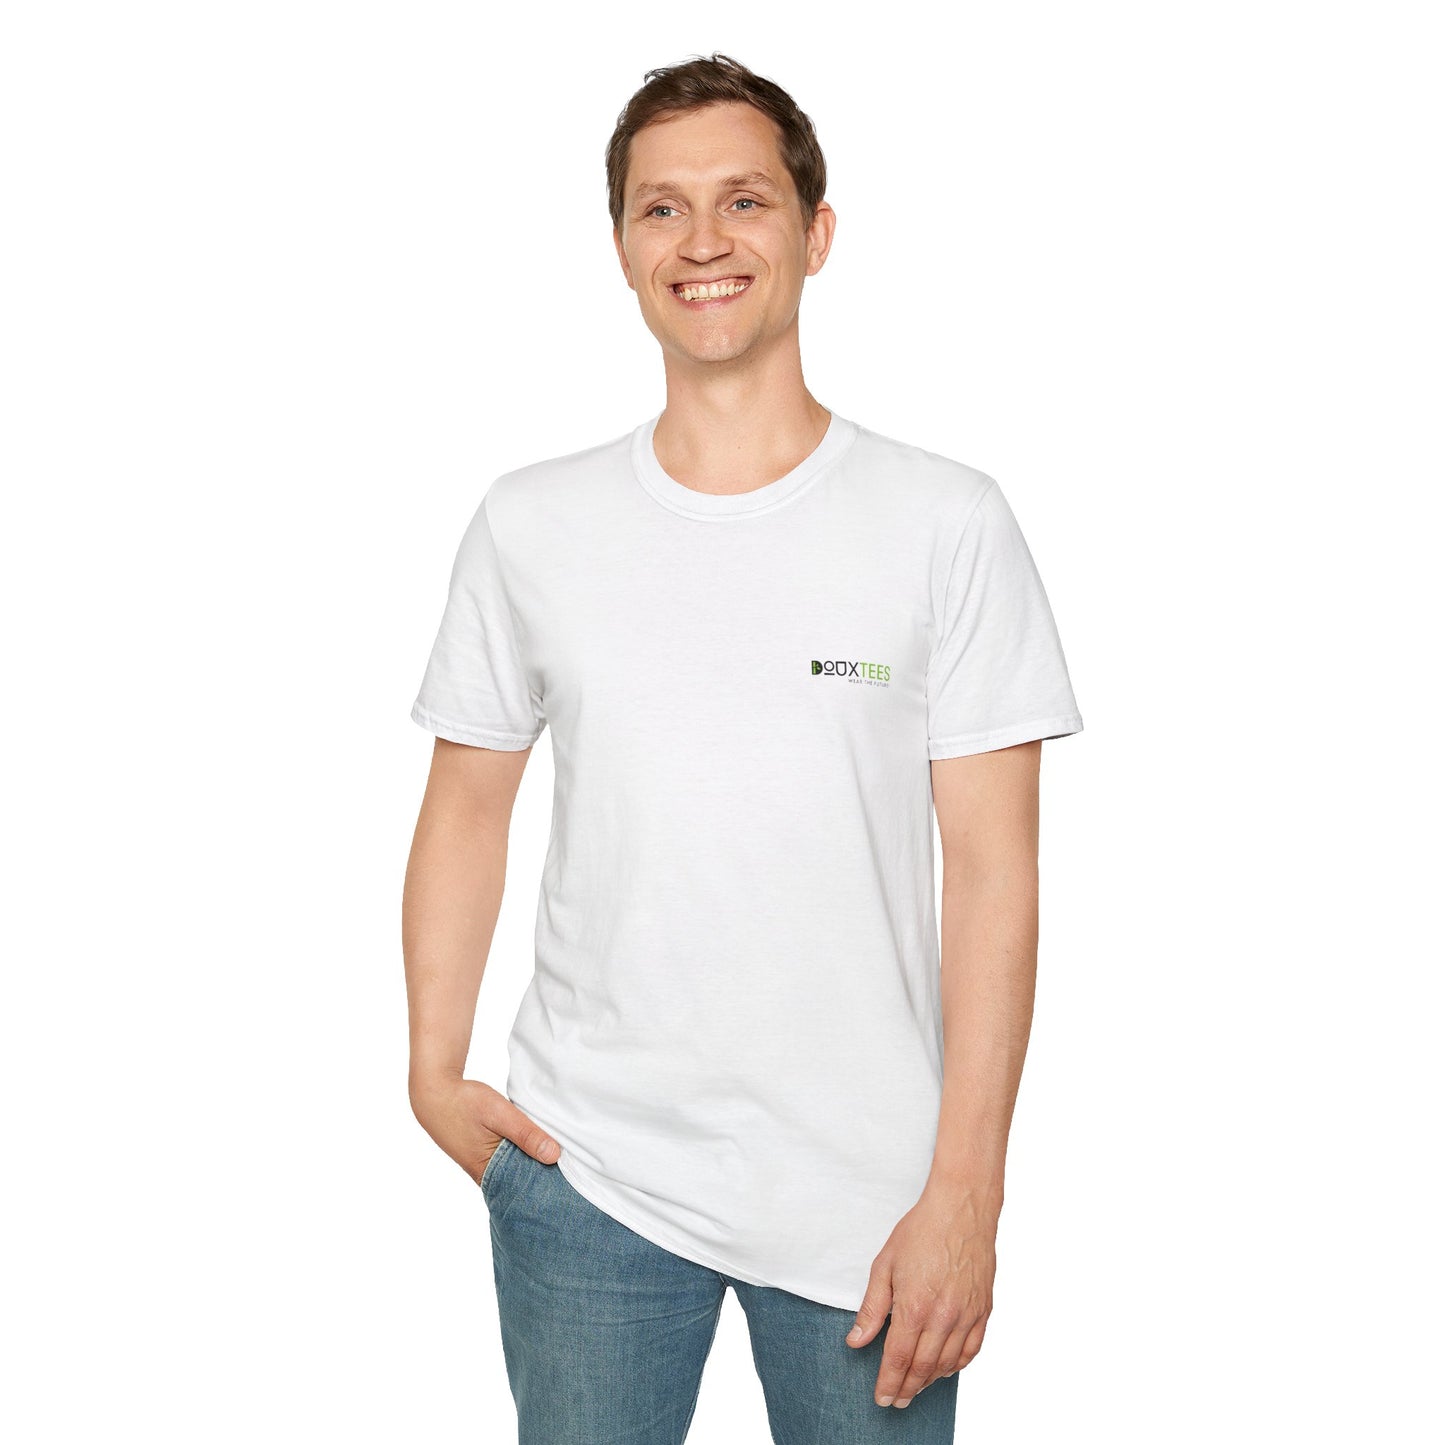 Eco Unisex T-Shirt